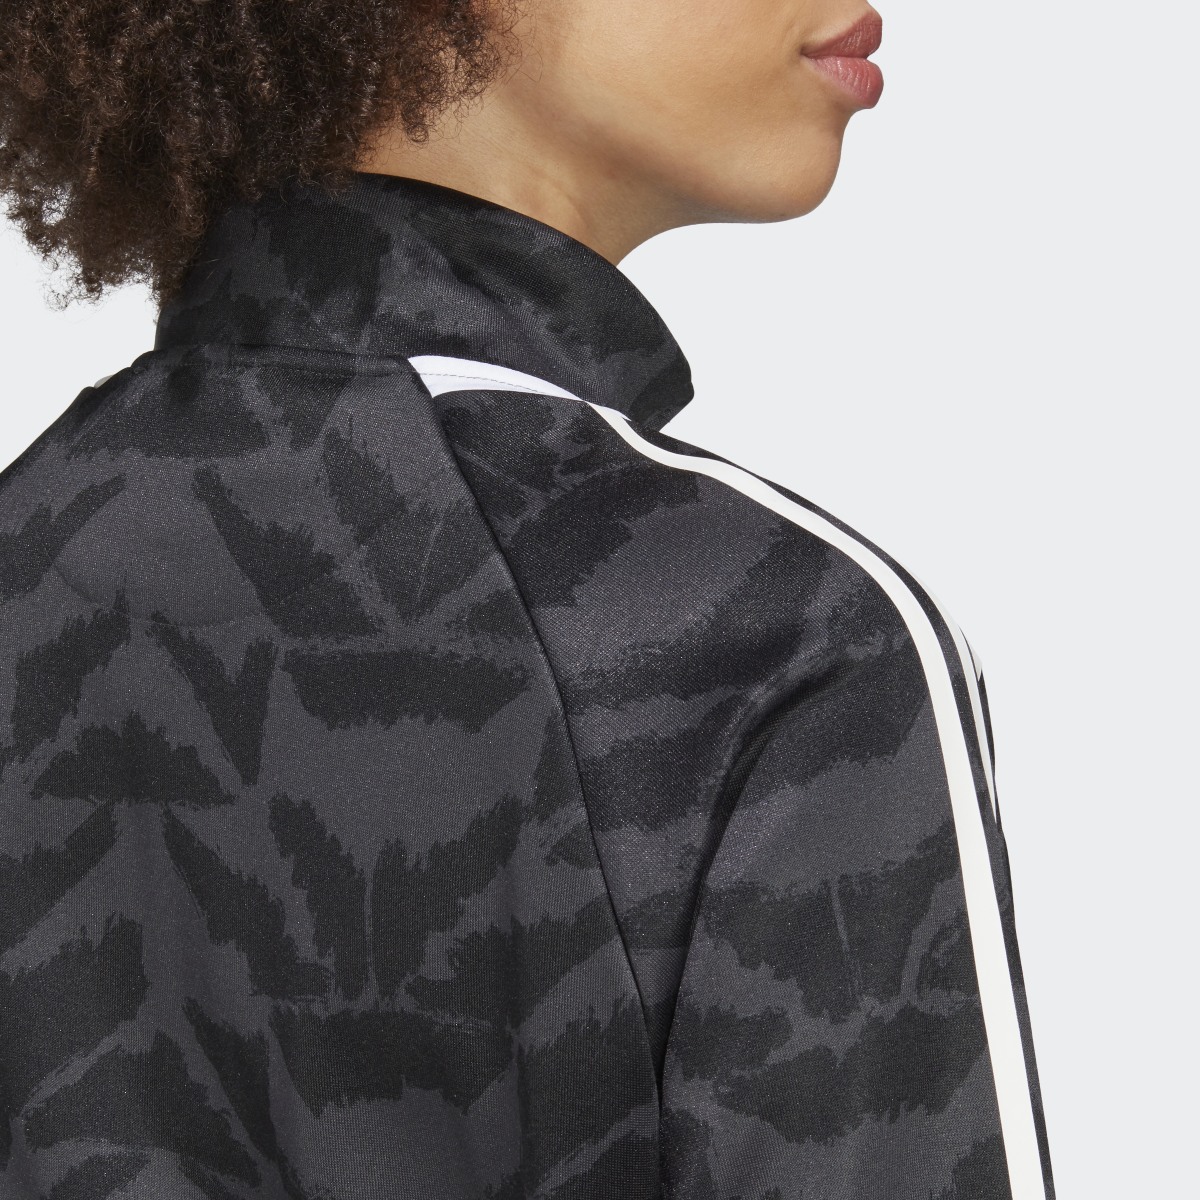 Adidas Tiro Suit Up Lifestyle Track Jacket. 13